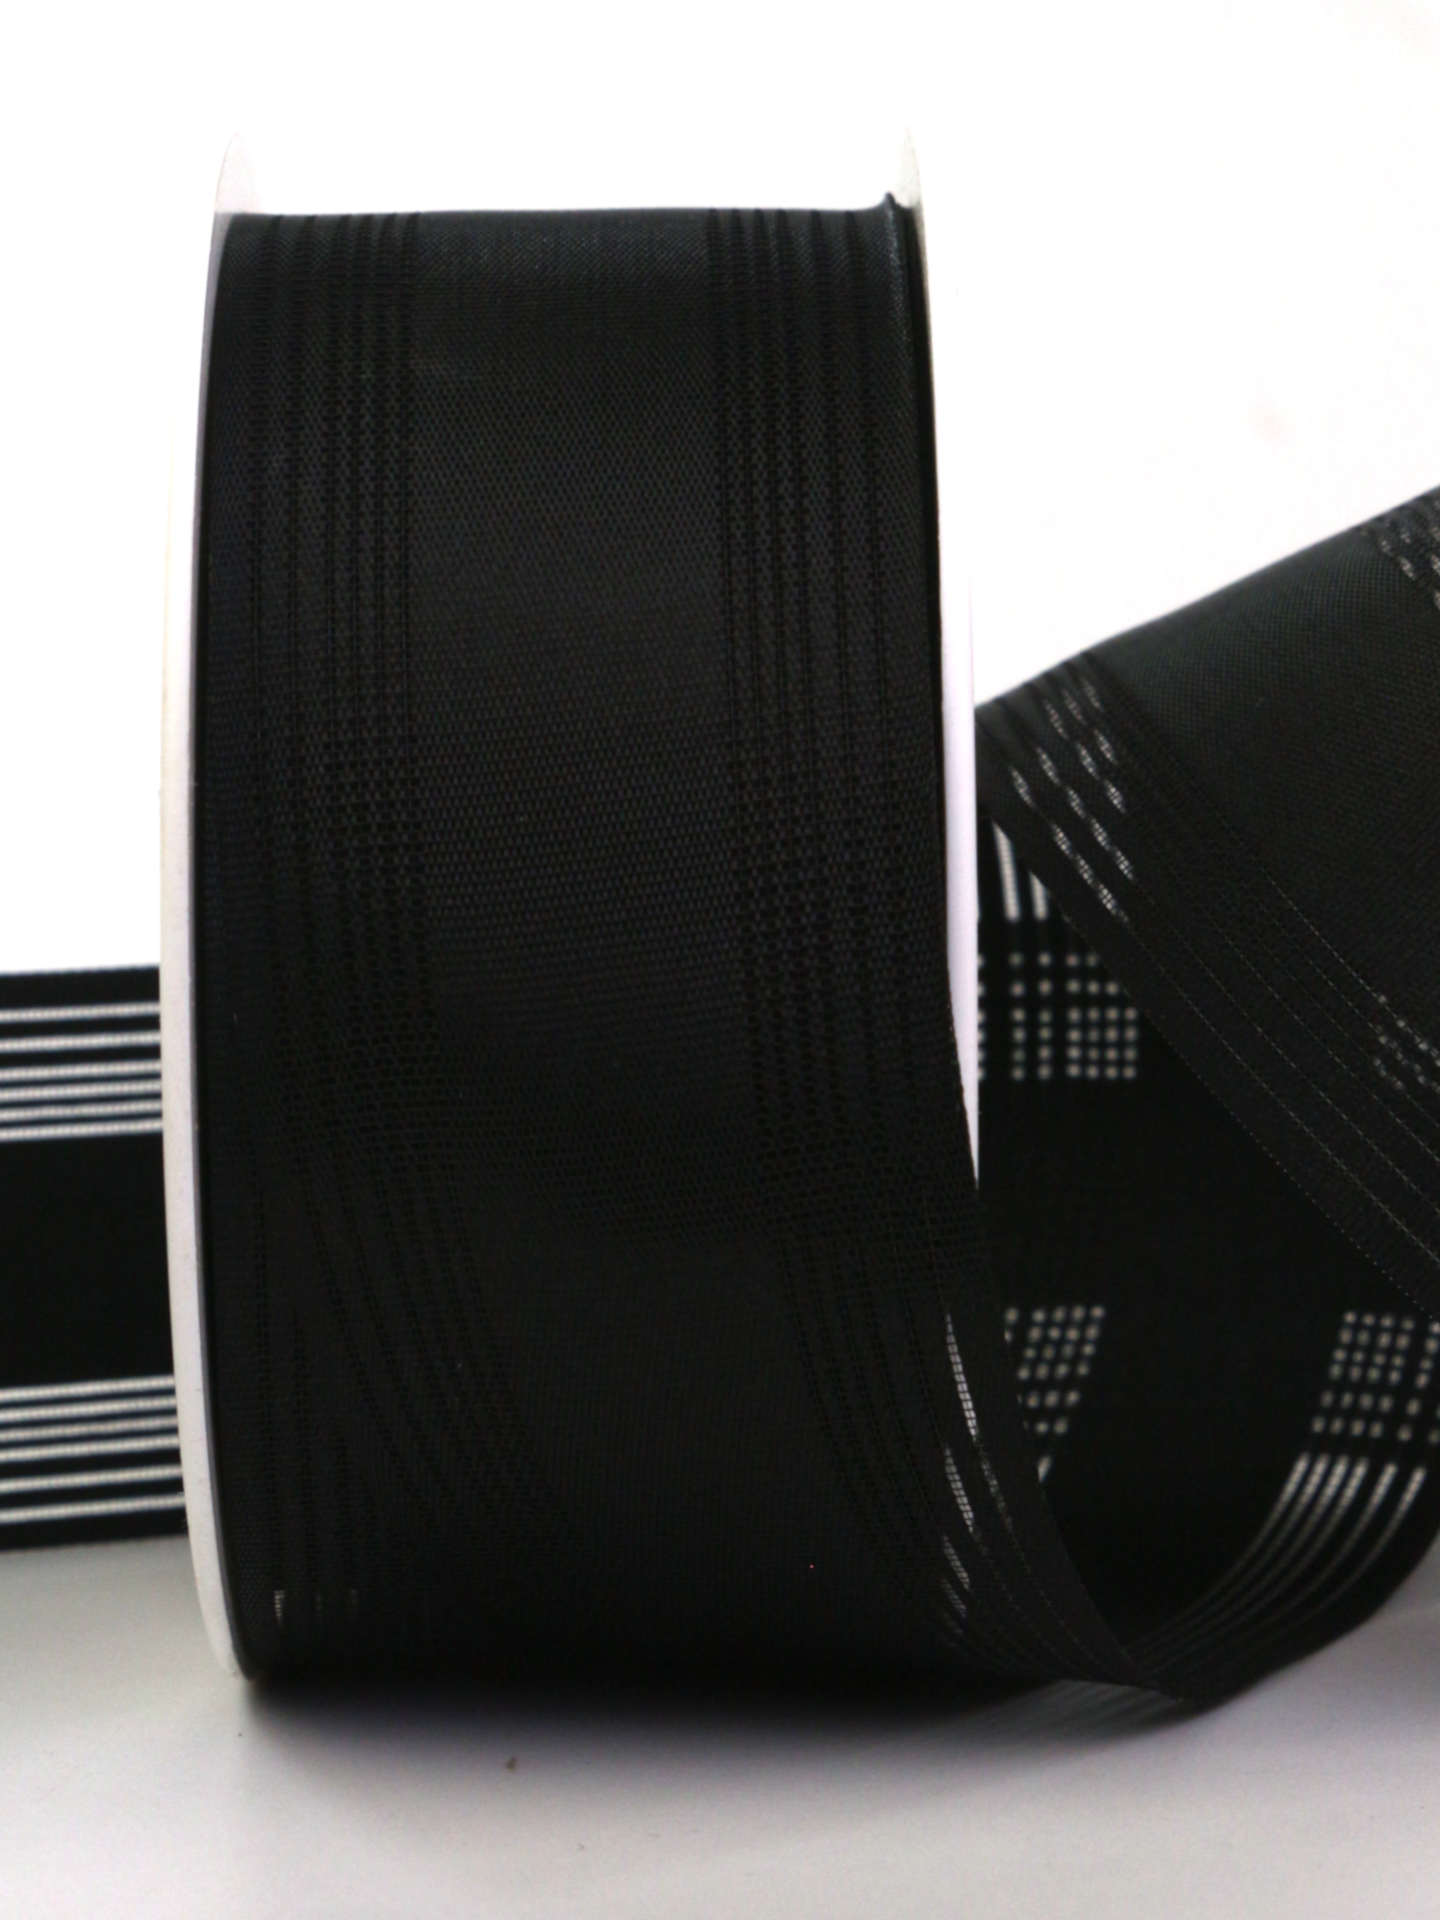 Gestreifter Trauerflor, schwarz, 40 mm breit, 25 m Rolle - trauerband, trauerflor